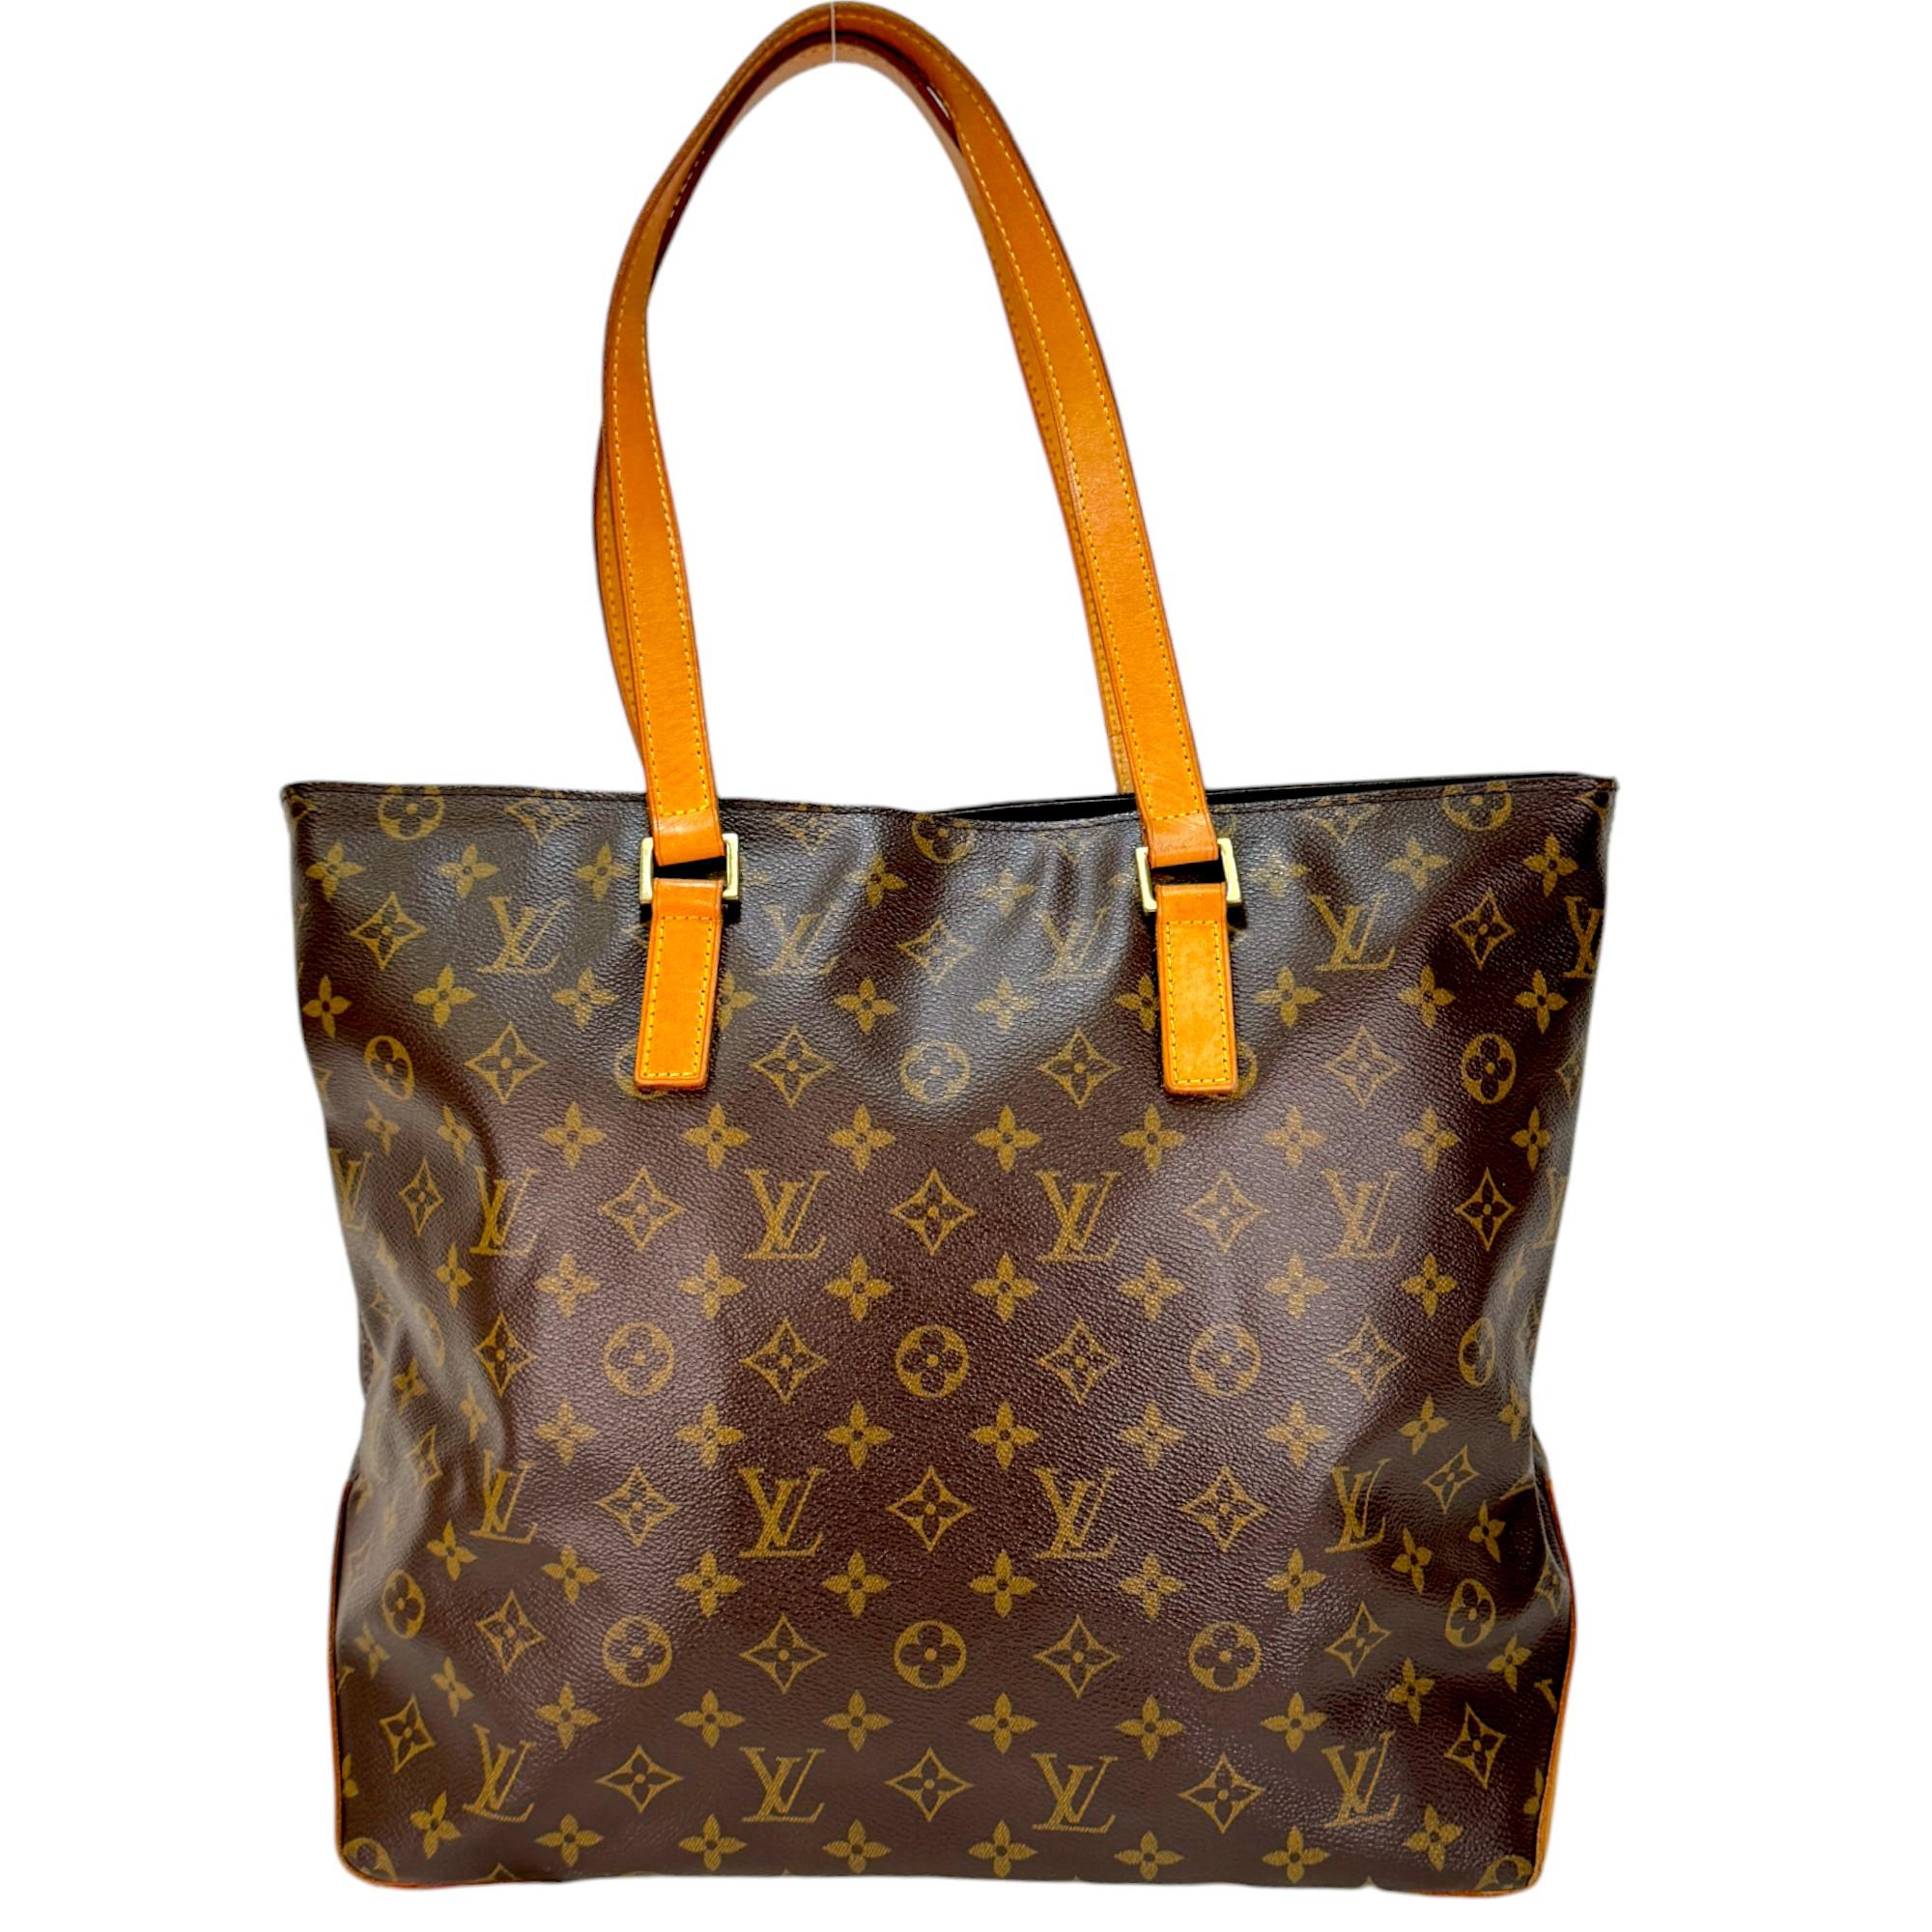 Authentic estate Louis Vuitton Monogram Cabas Mezzo shoulder bag